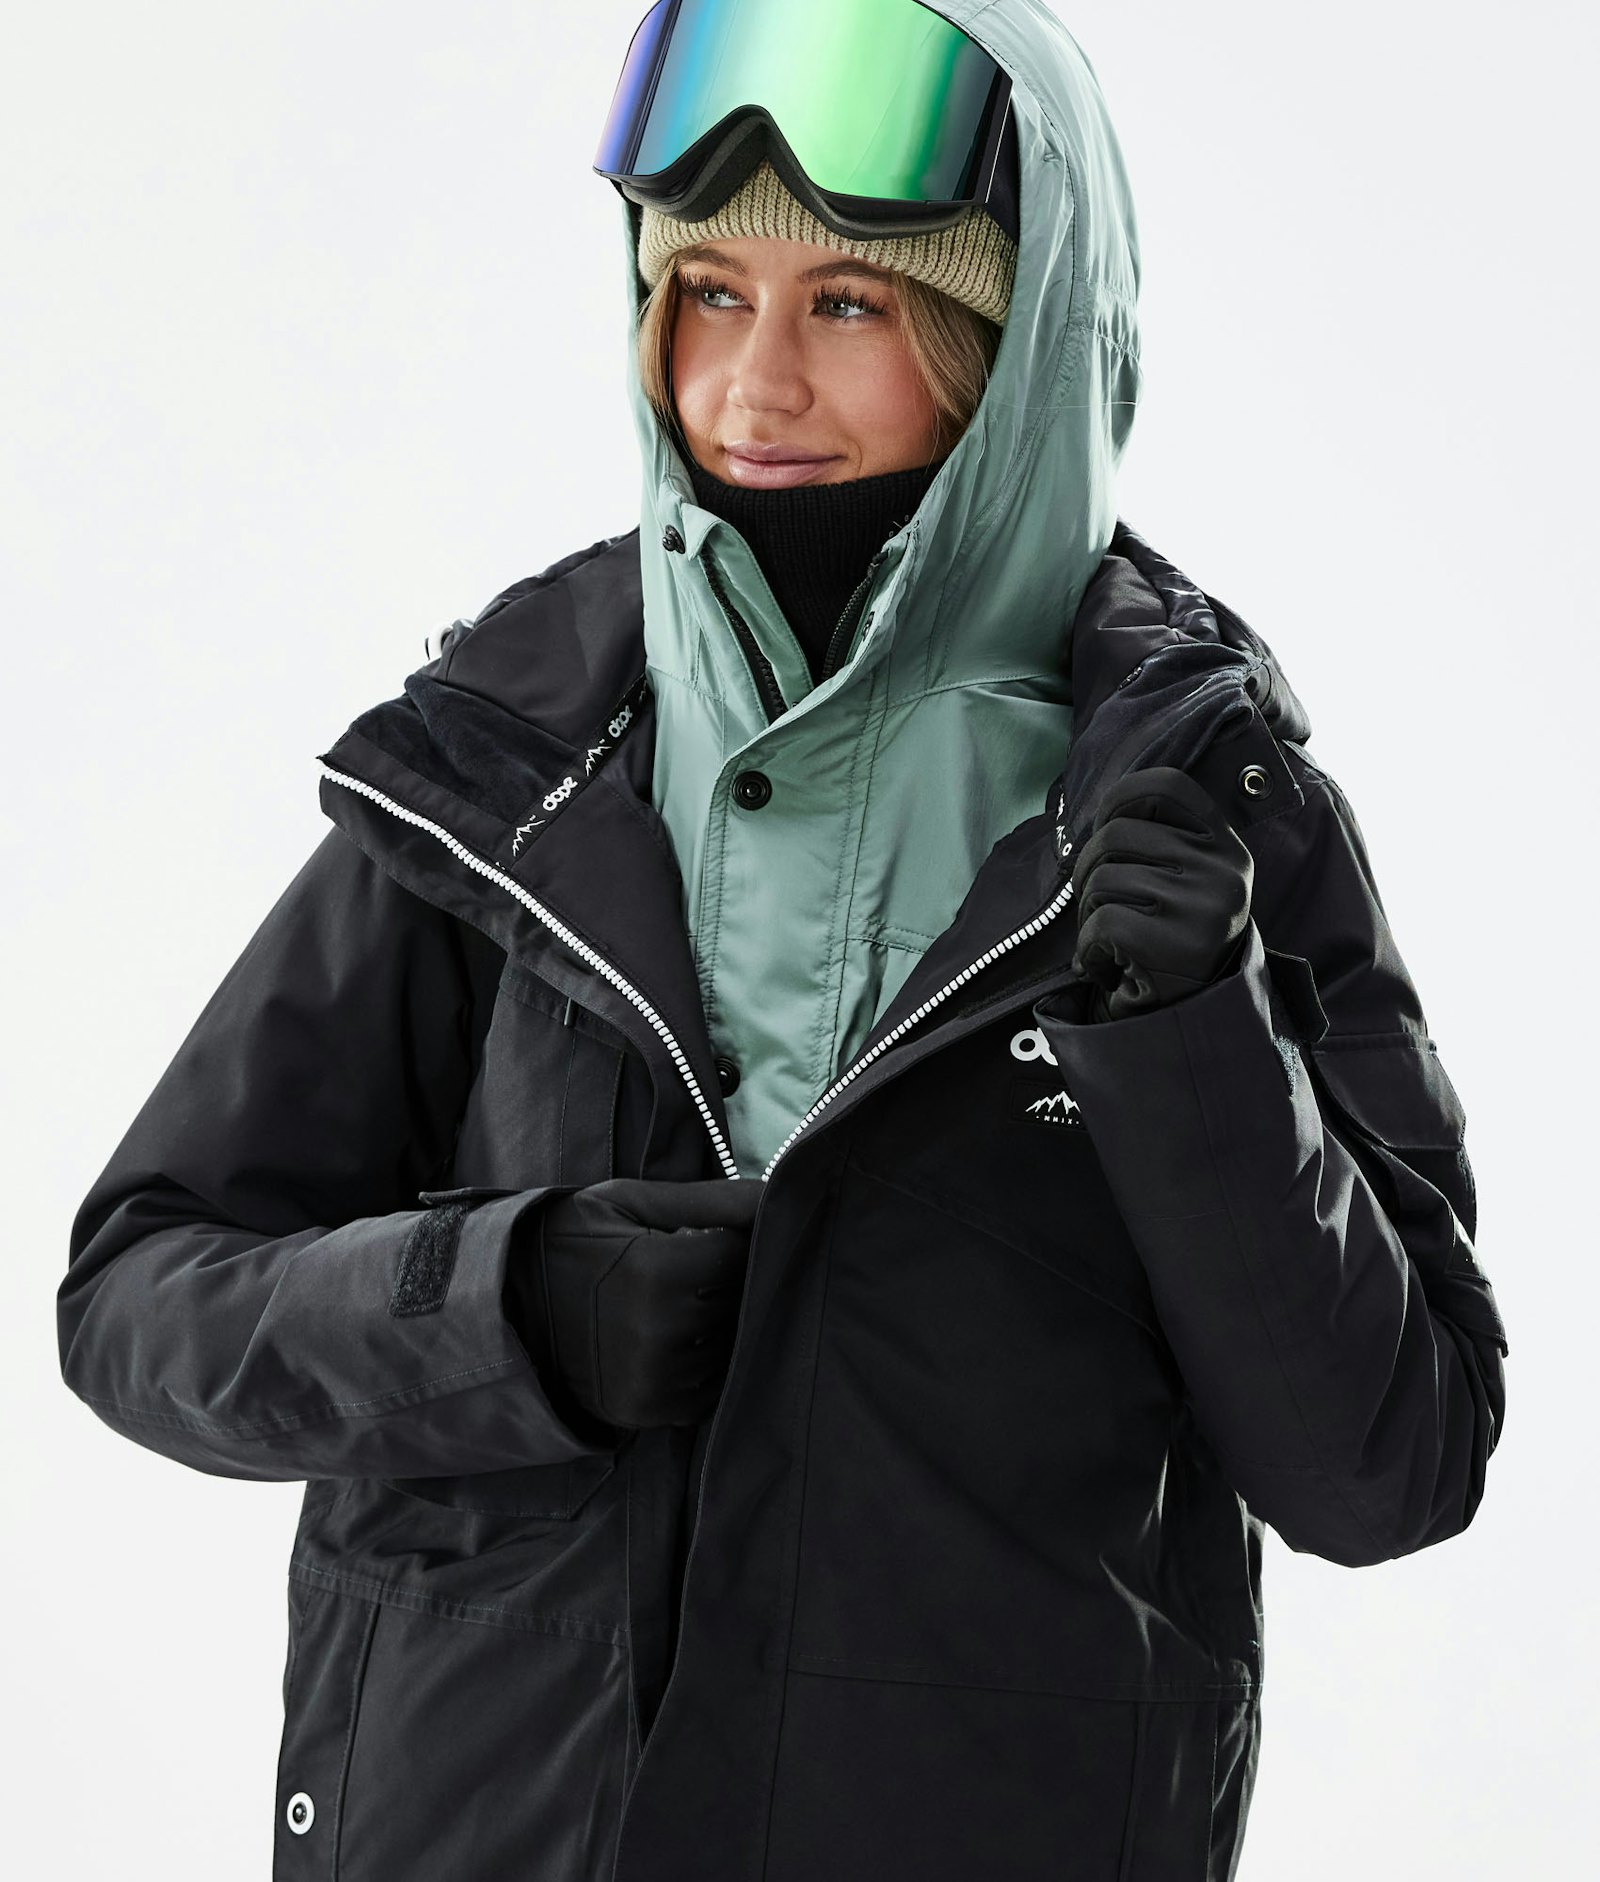 Dope Insulated W Midlayer Jacket Ski Women Faded Green